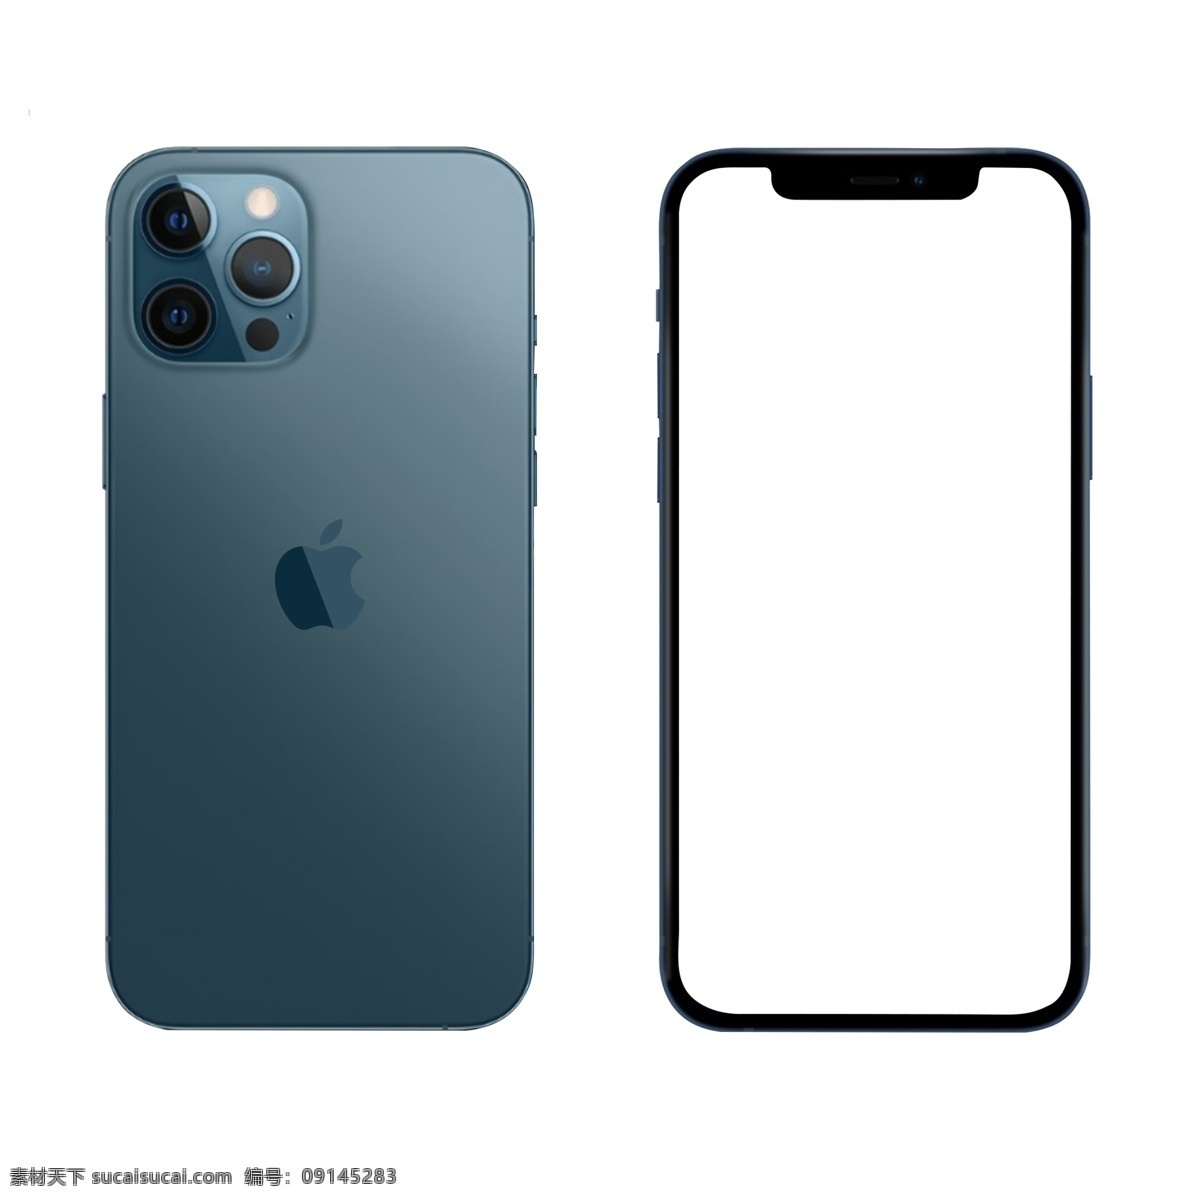 iphone pro 苹果 手机图片 iphone12 手机 三摄像头 蓝色 无边框 logo 最新款 ps素材 分层